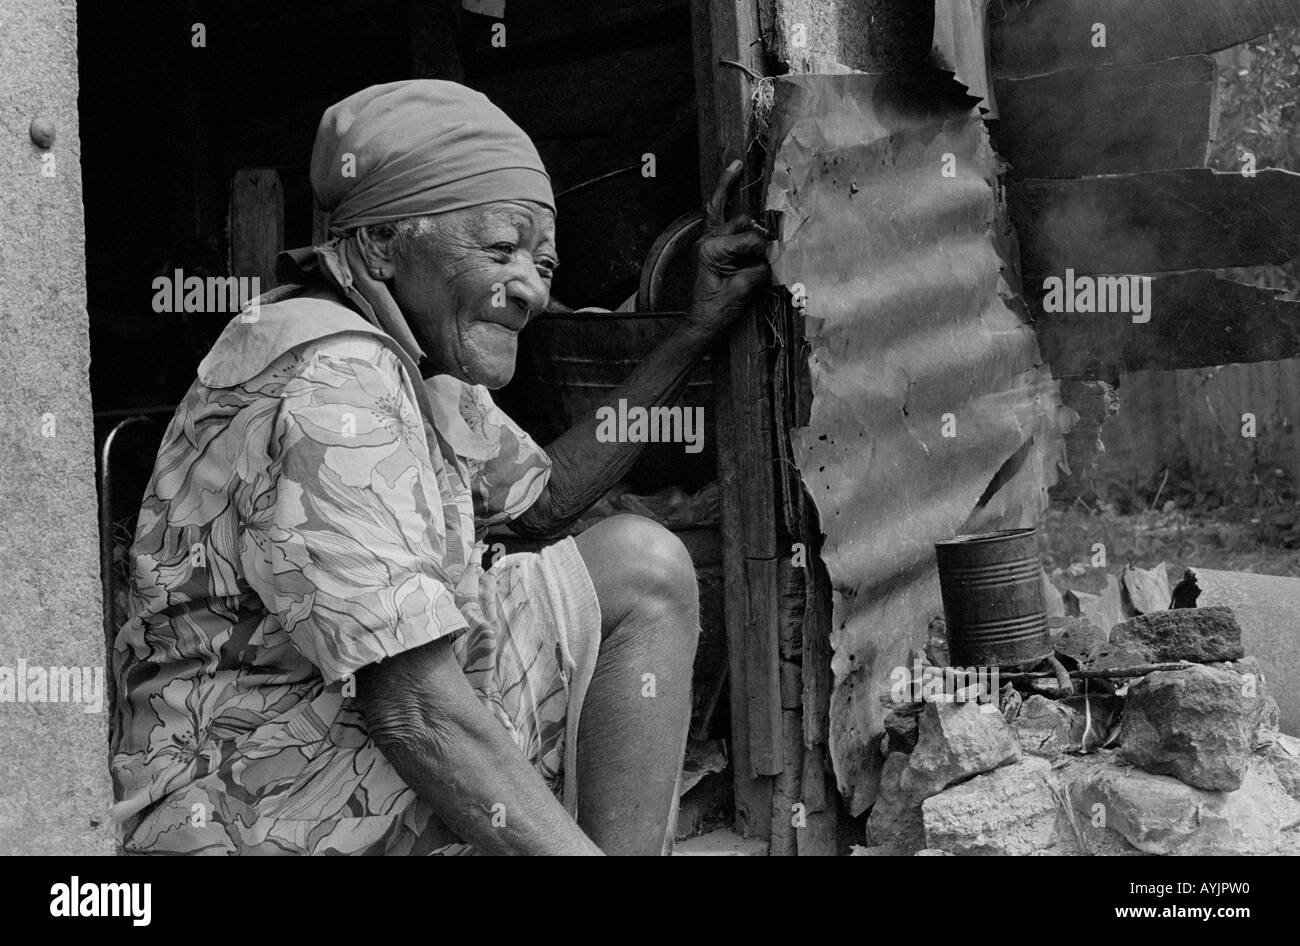 S/W-Porträt einer mittellosen älteren Frau, die in der ärmsten Gegend der spanischen Stadt lebt. Jamaika Stockfoto